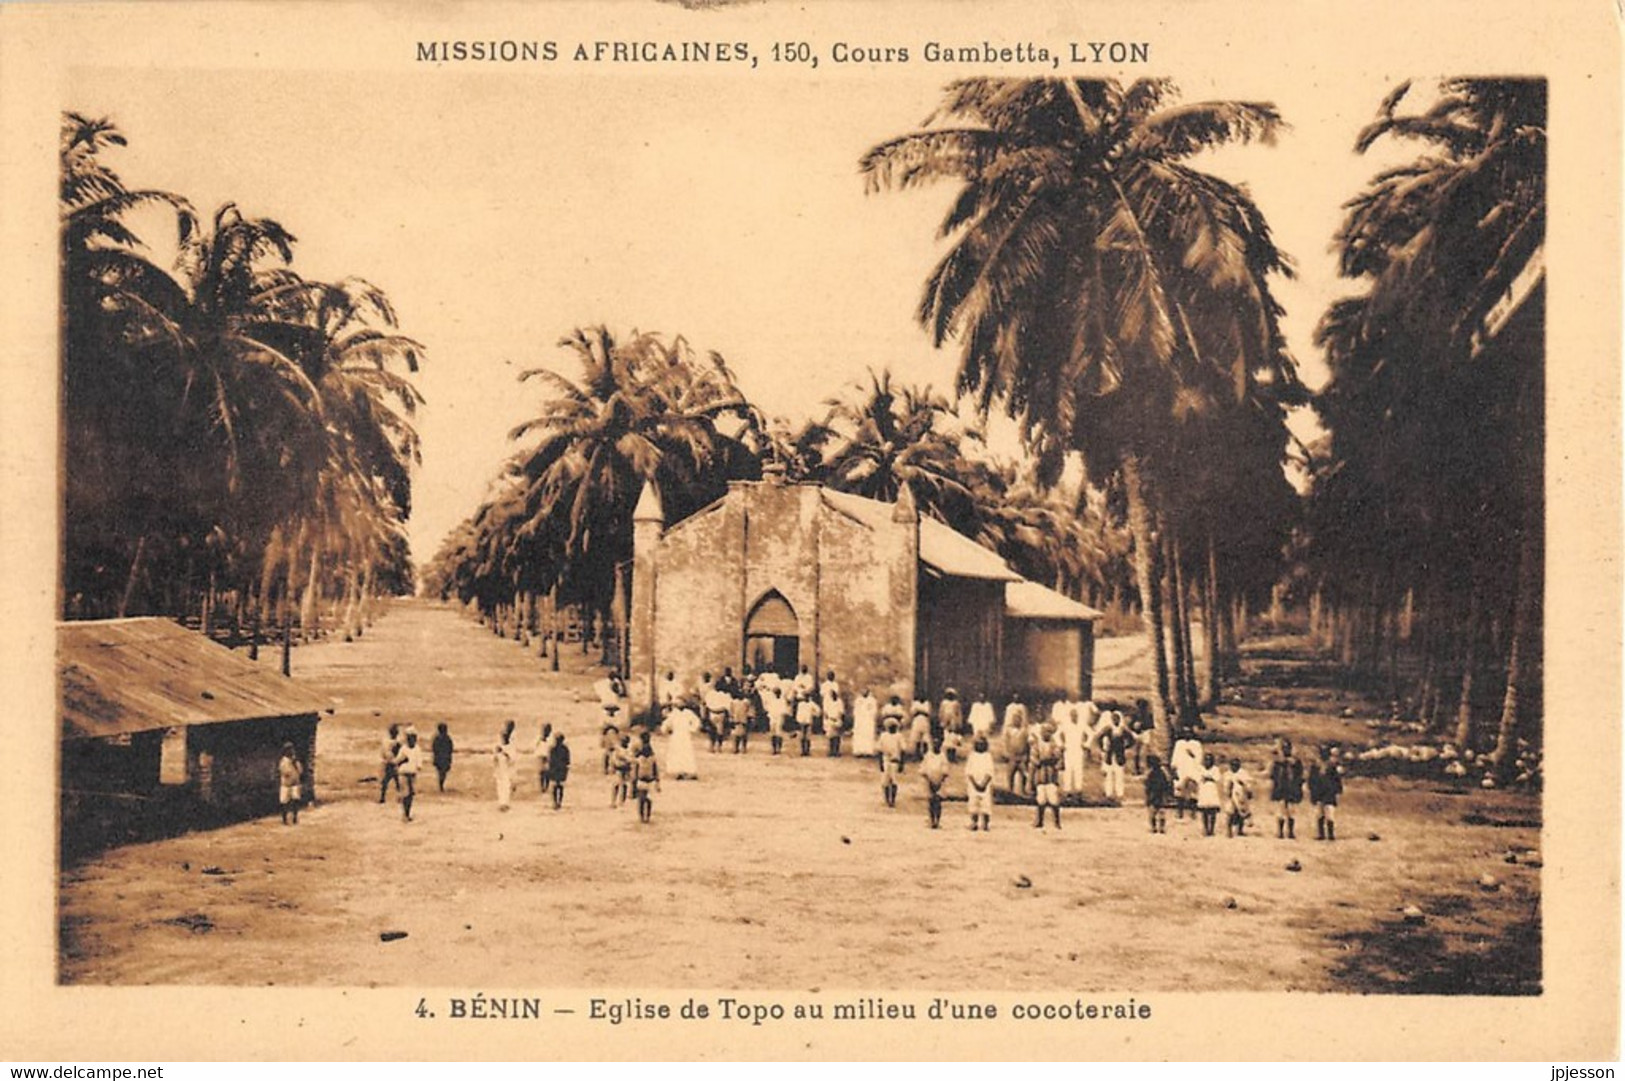 BENIN - EGLISE DE TOPO AU MILIEU D'UNE COCOTERAIE - MISSIONS AFRICAINES, LYON - Benin